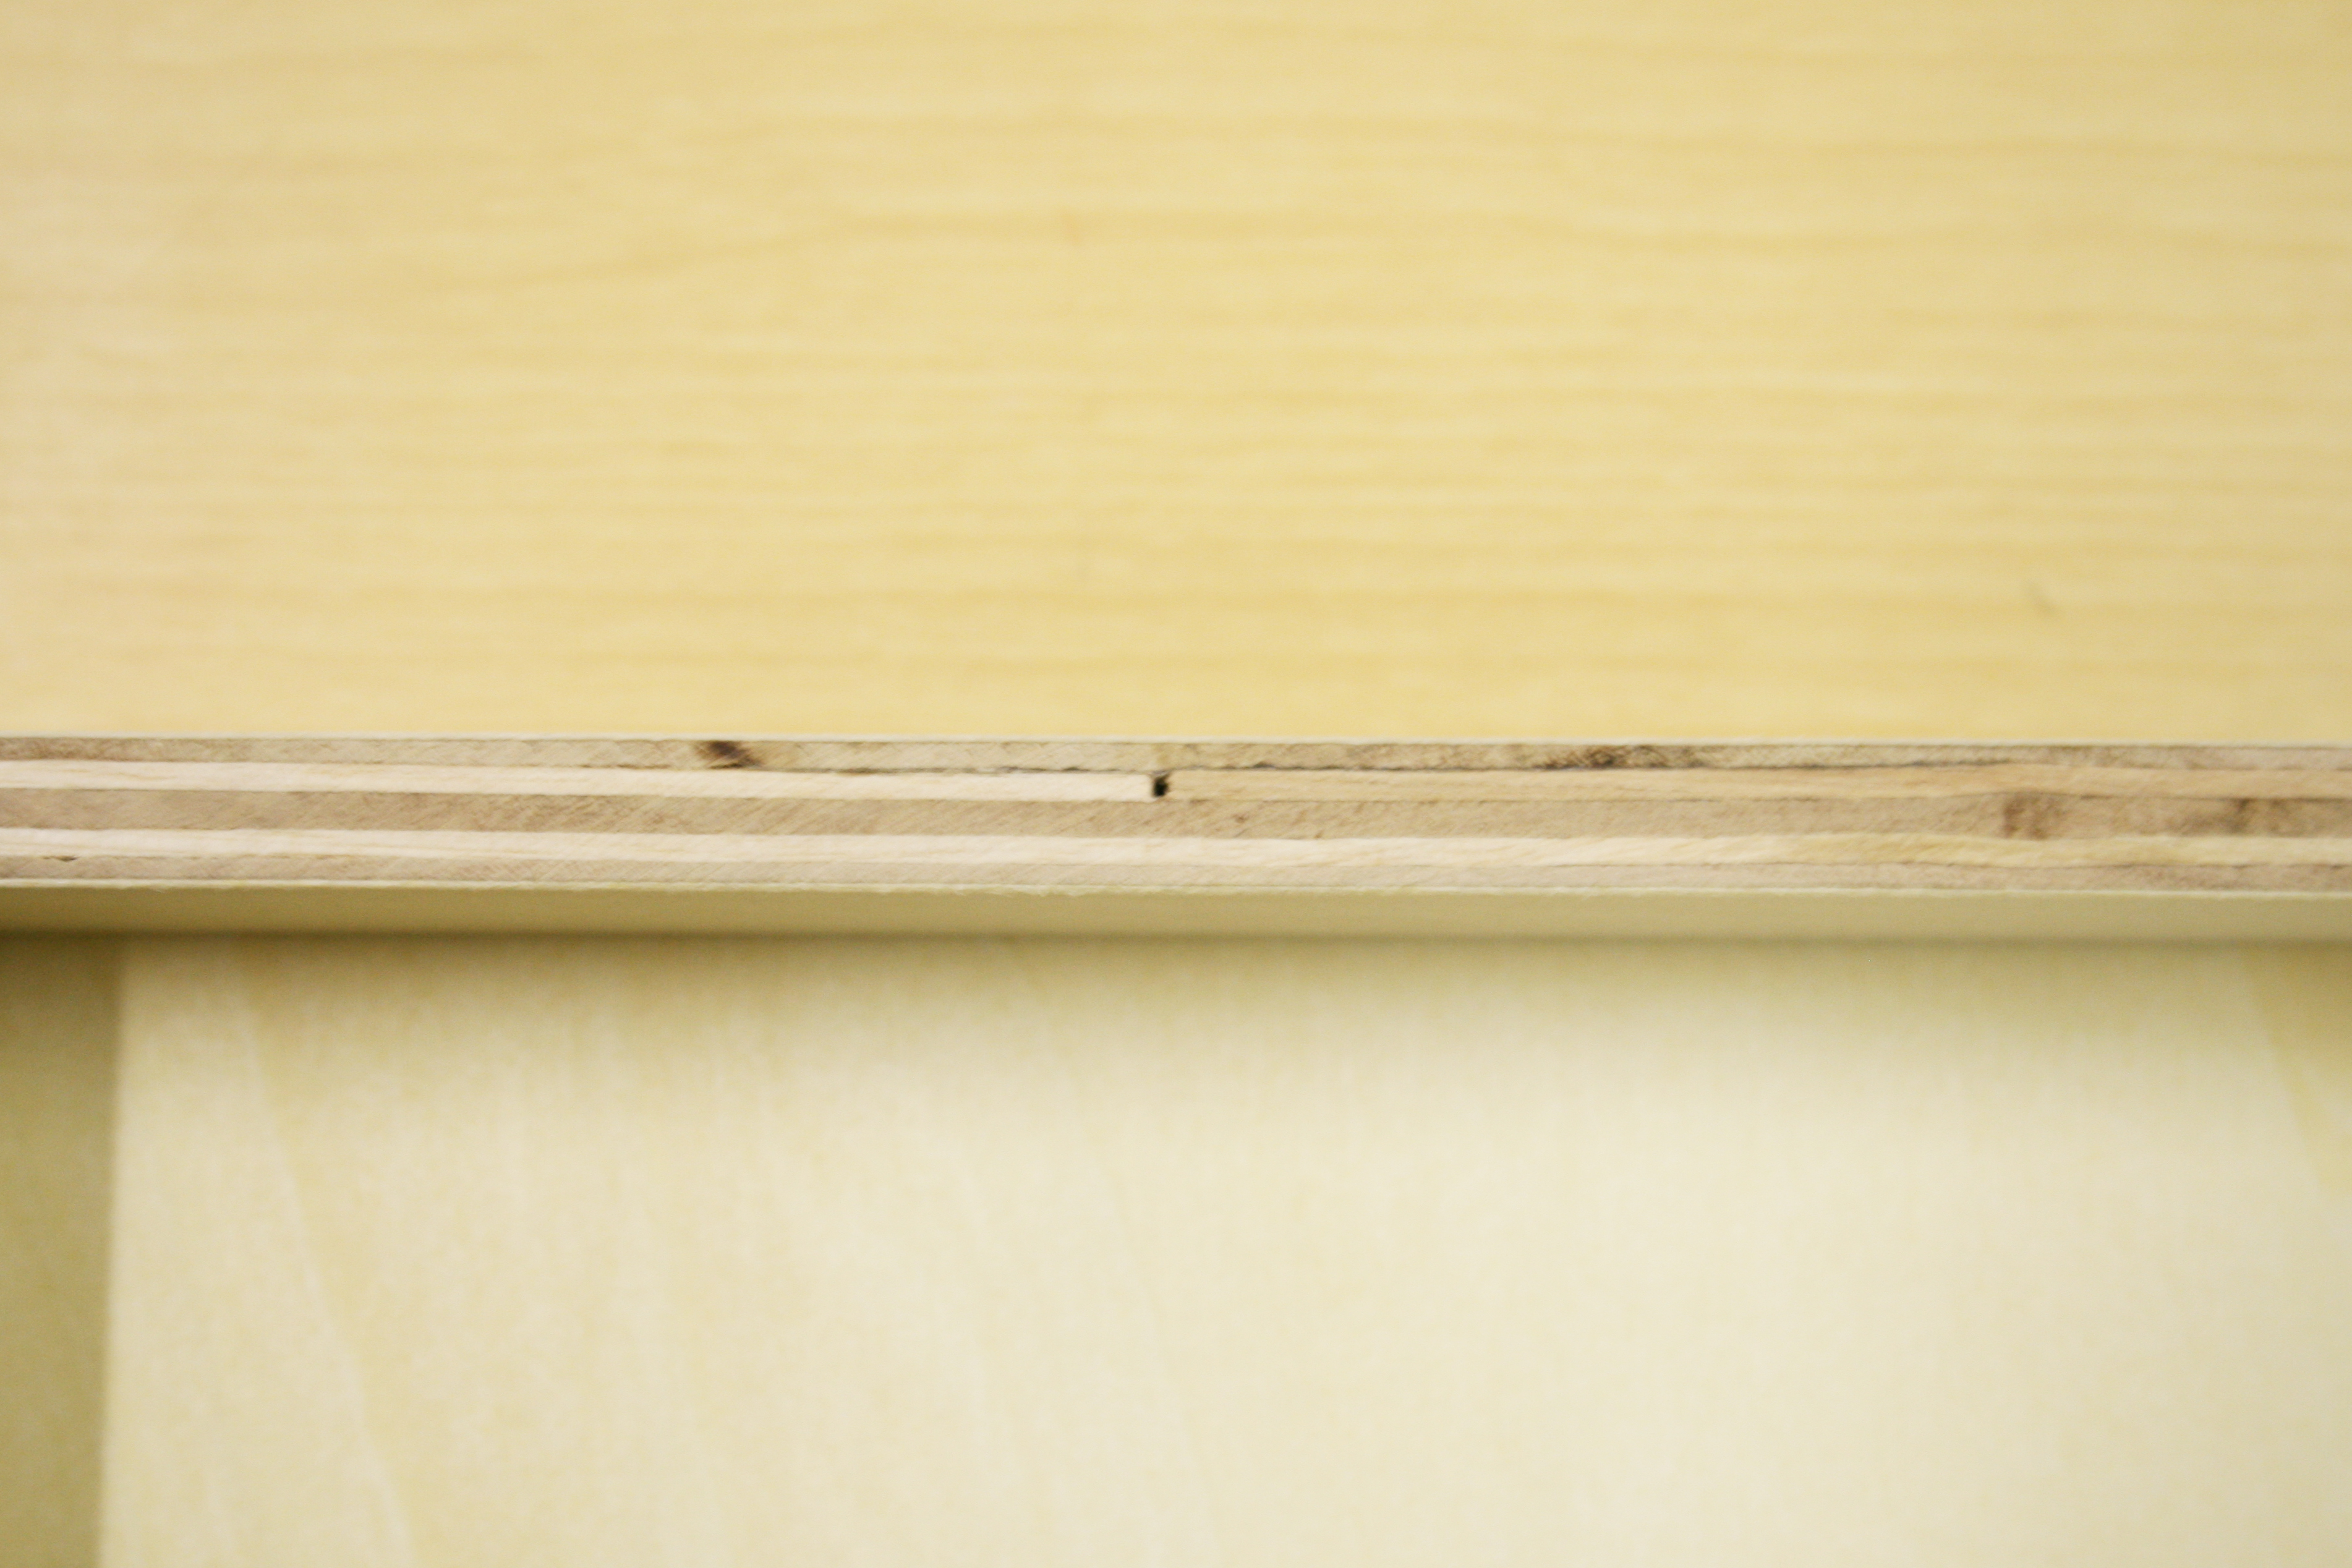 23529円 日本正規代理店品 Naef ネフ社 ホルツネフスピール Spiel Edelholz～スイス のおもちゃの原点 ネフスピール を8種類の木材を使用して作った です